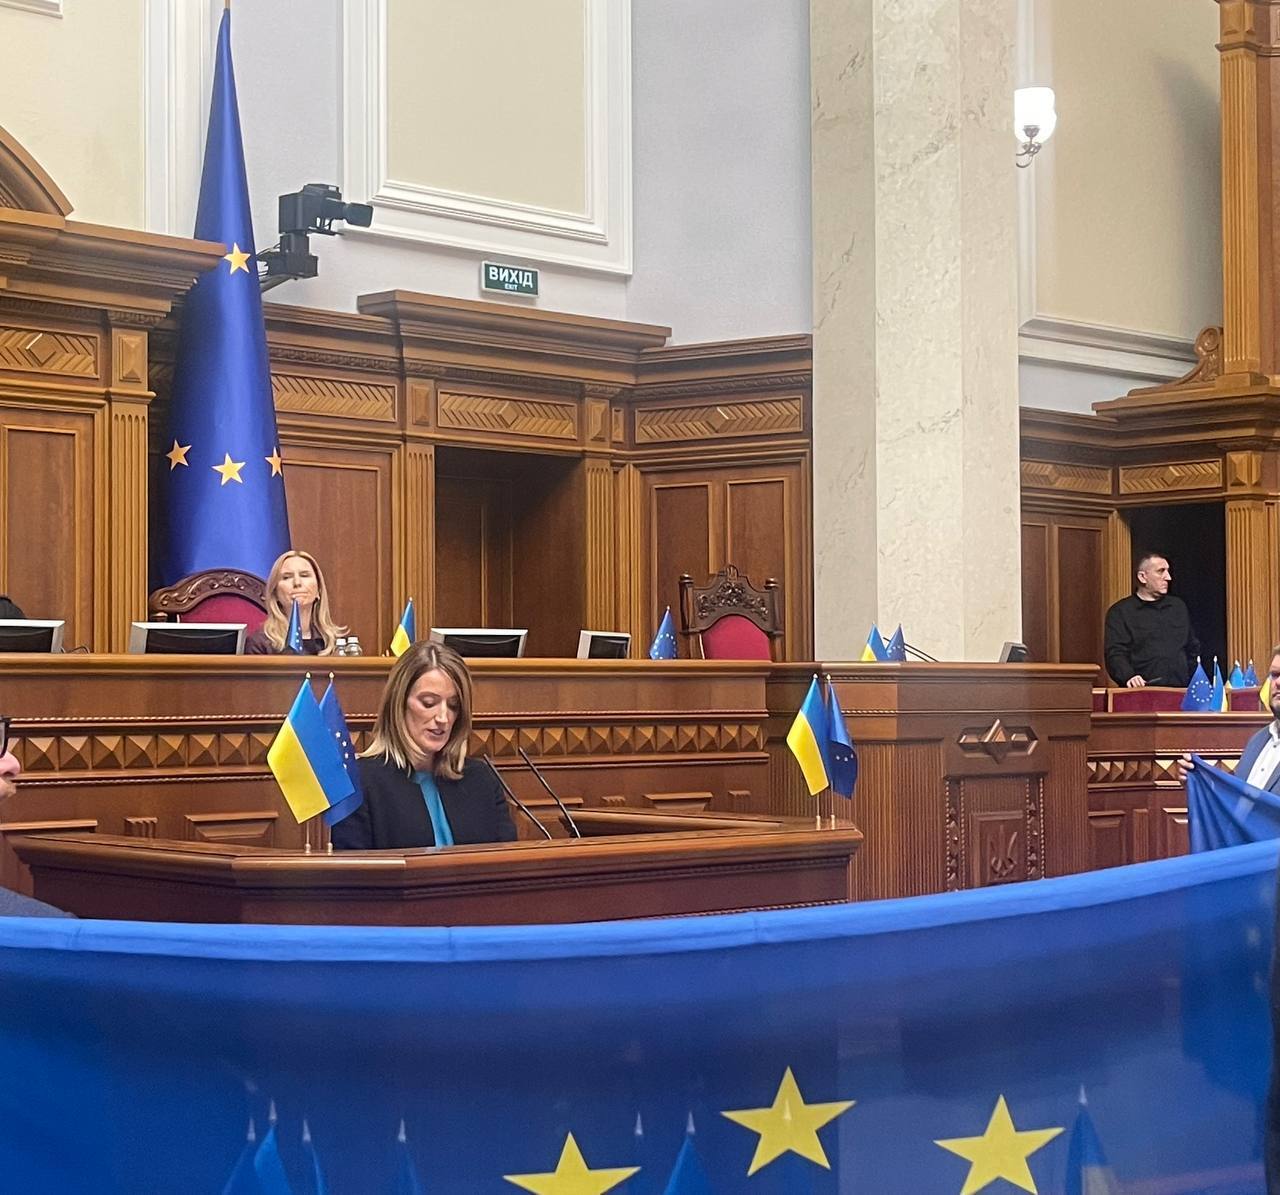 Метсола в украинском парламенте